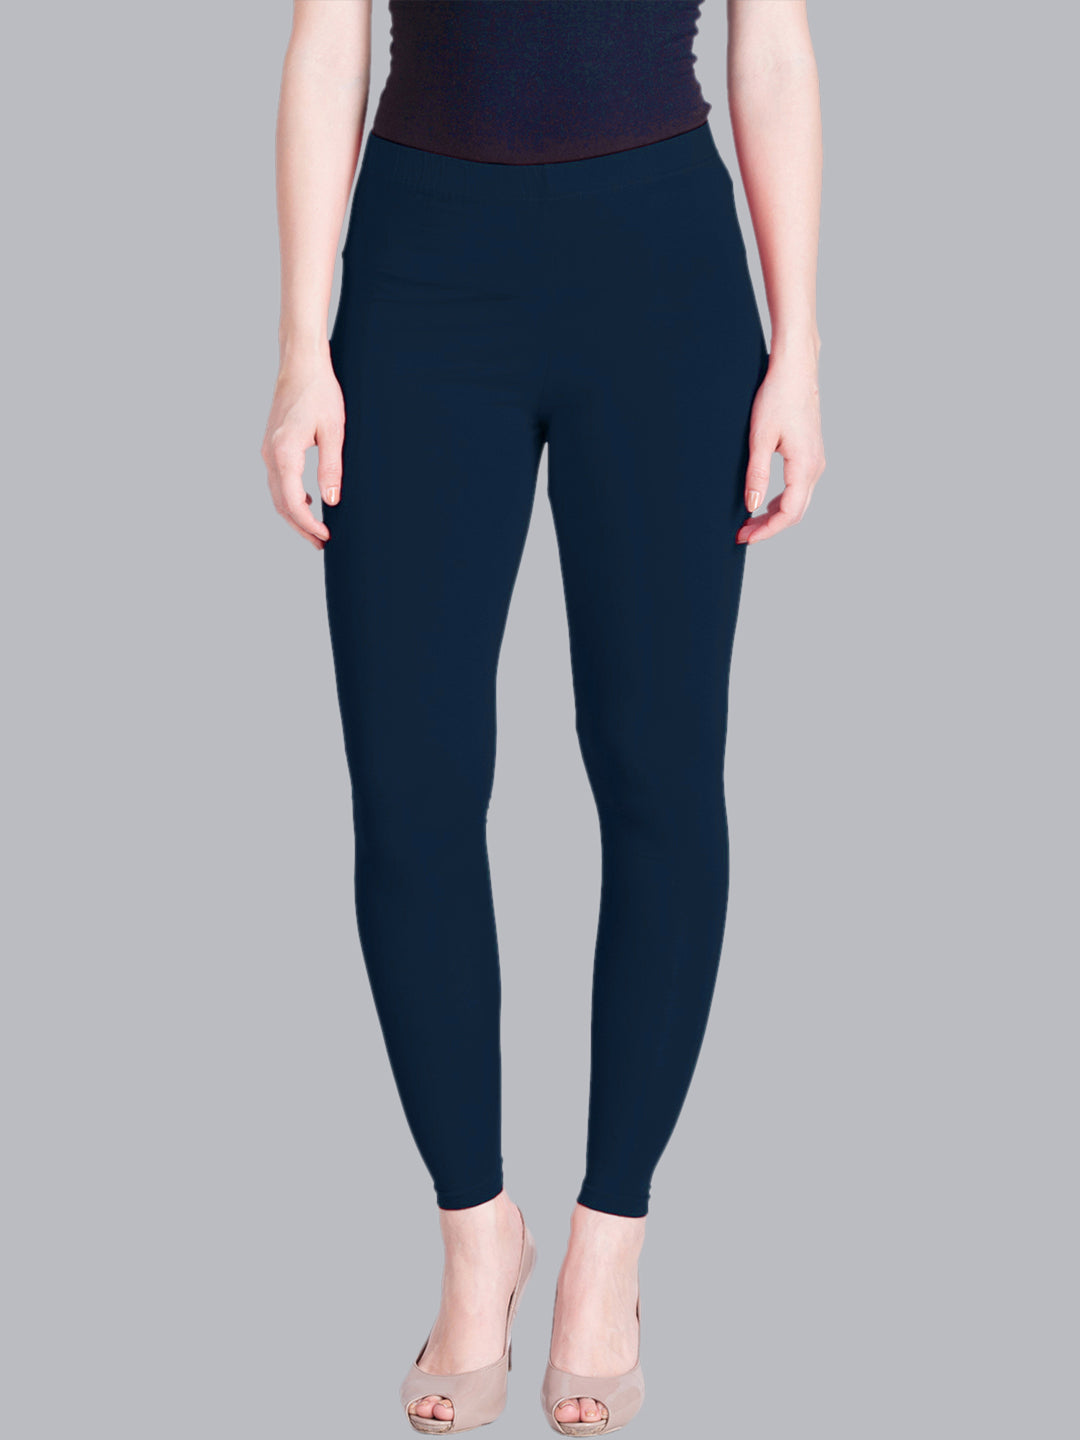 Buy Women Ankle length Blue Leggings / Yoga Pants: TT Bazaar